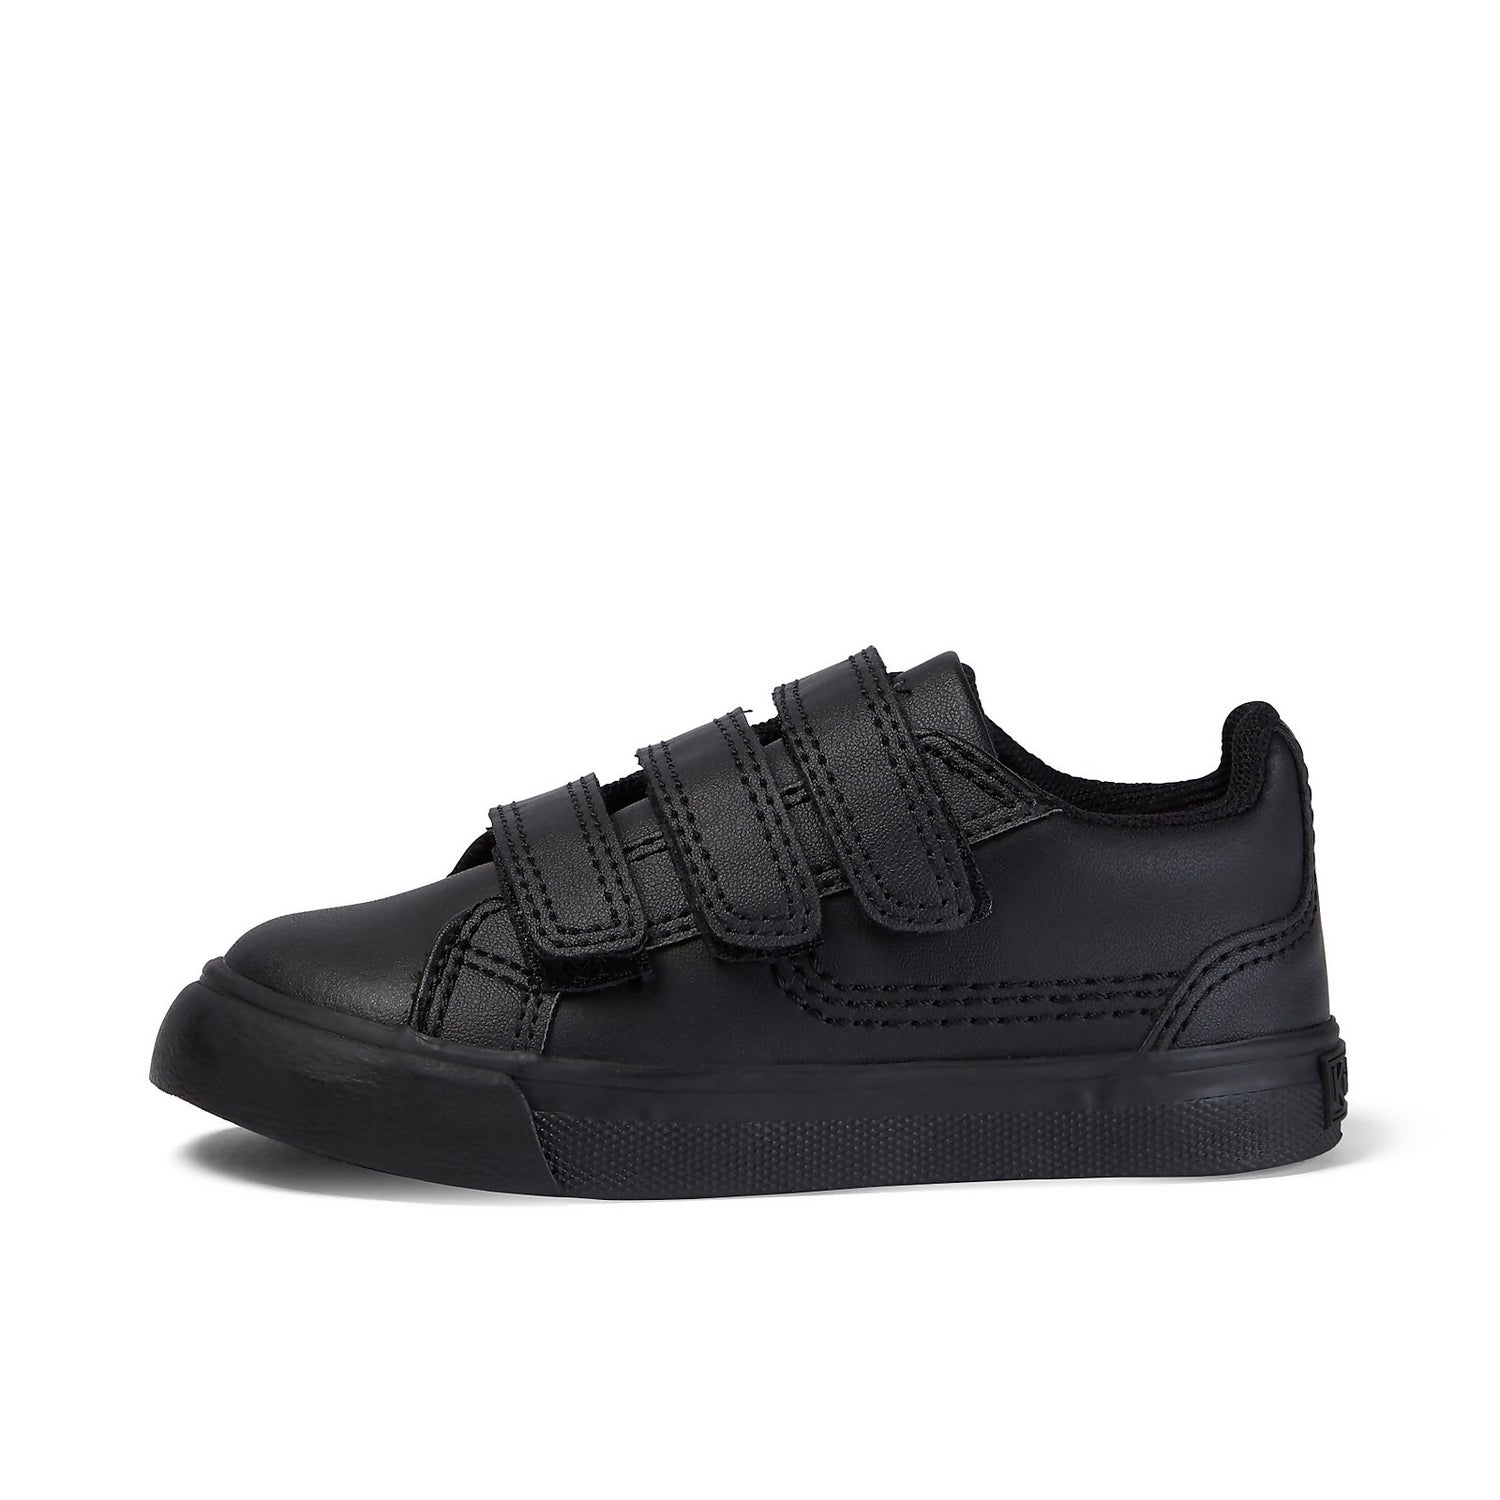 Boys Shoe Black Easy Fasten School Shoe Hook Loop Flex Leather